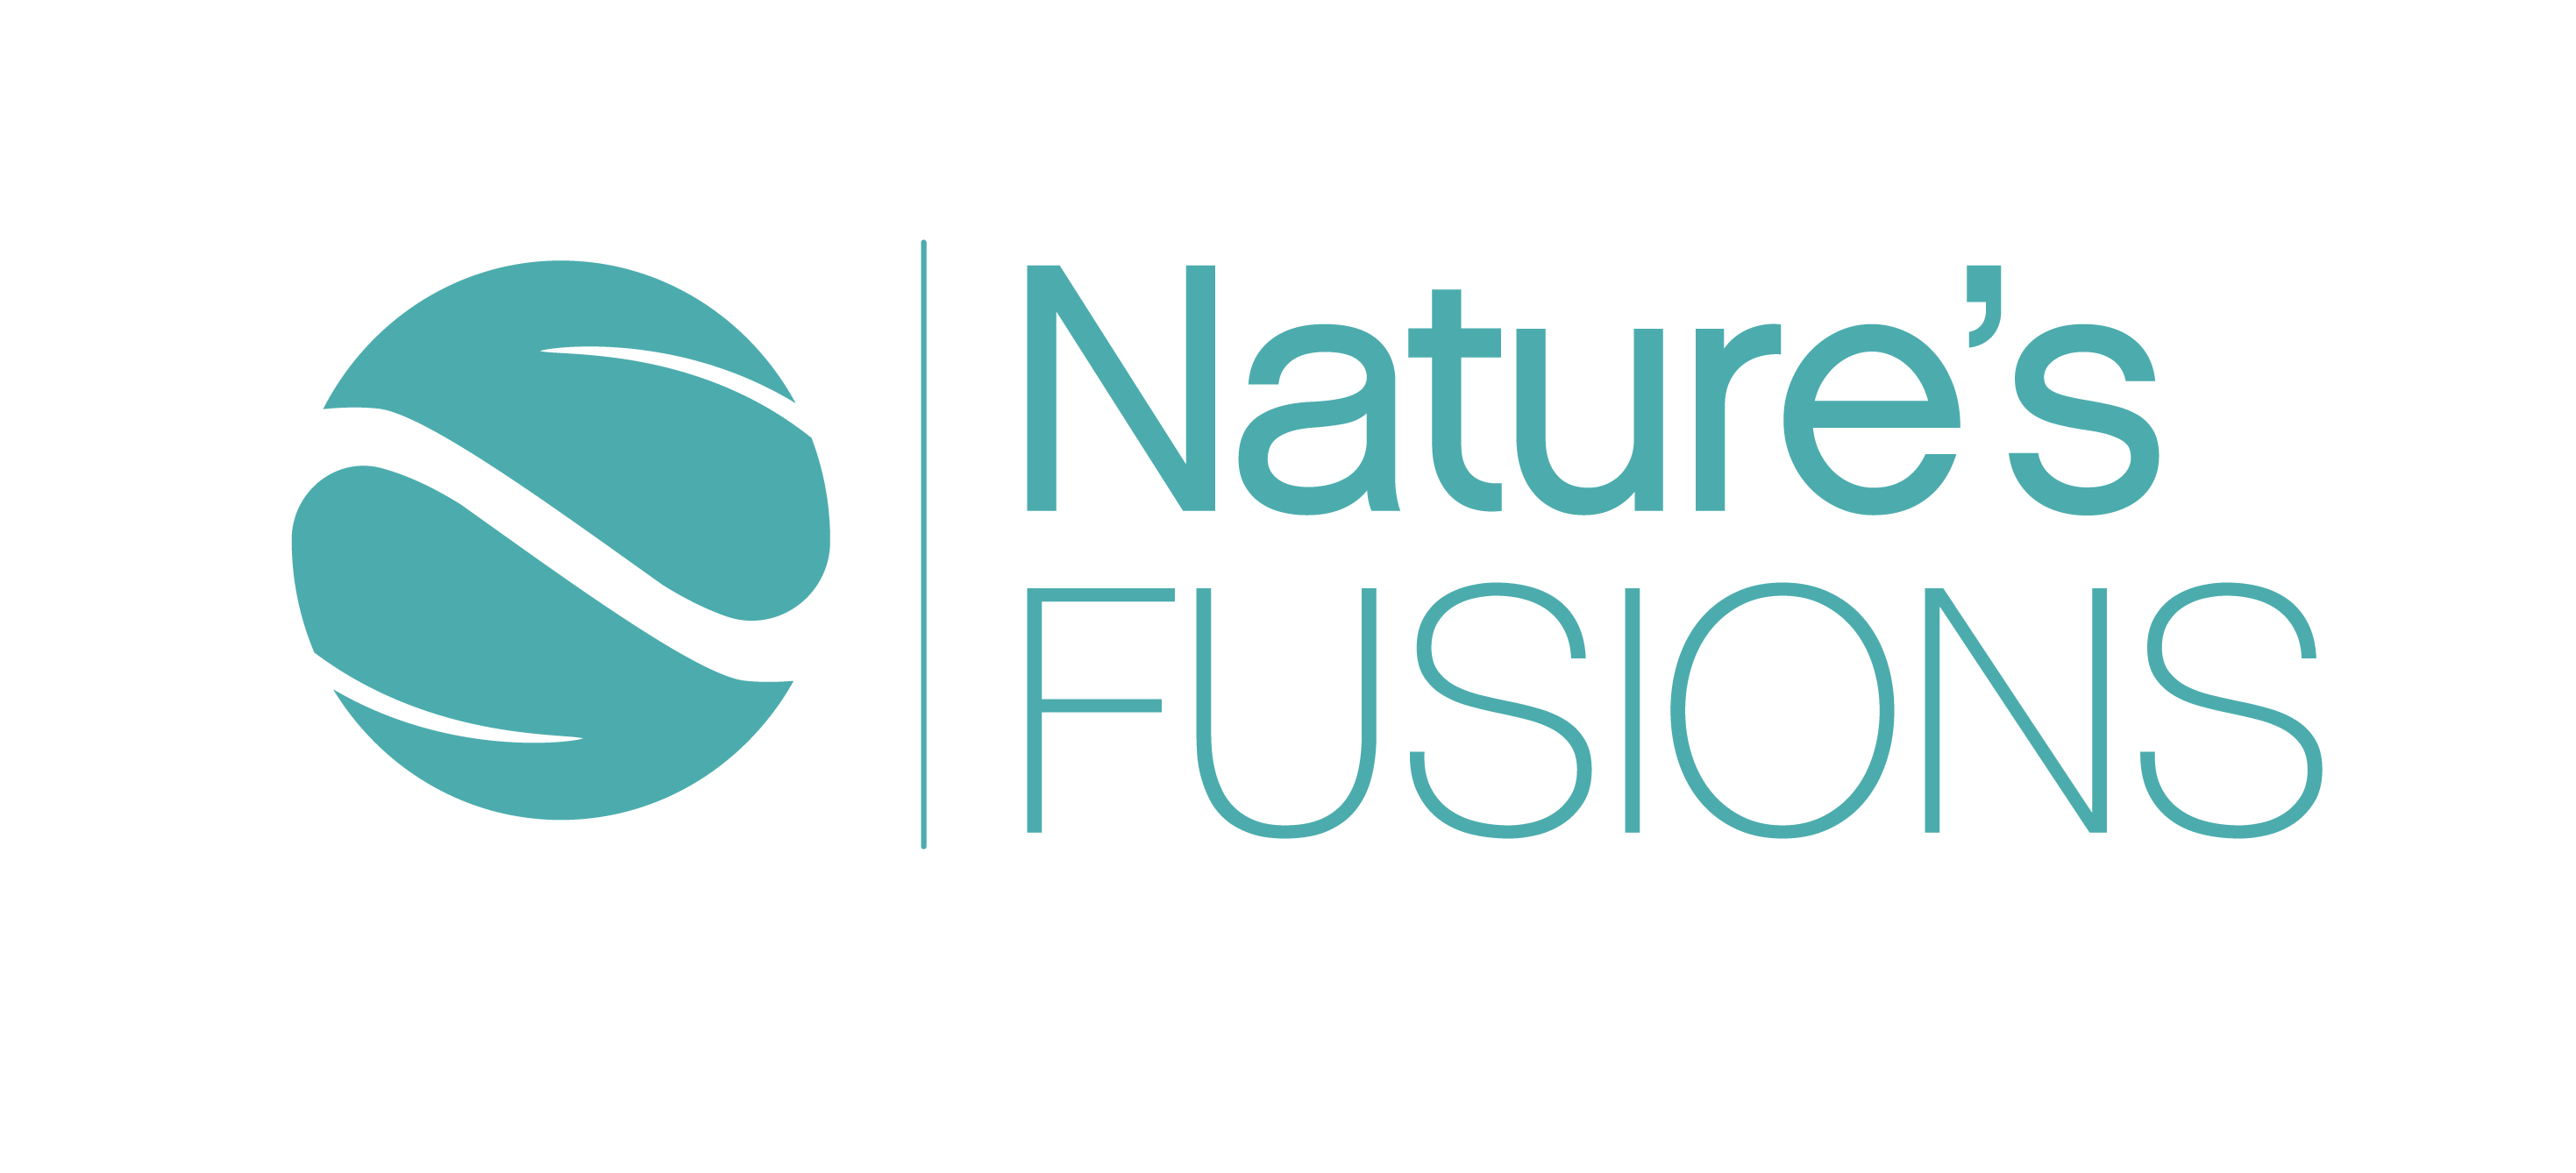 Nature’s Fusions Essential Oils - Premium Listing